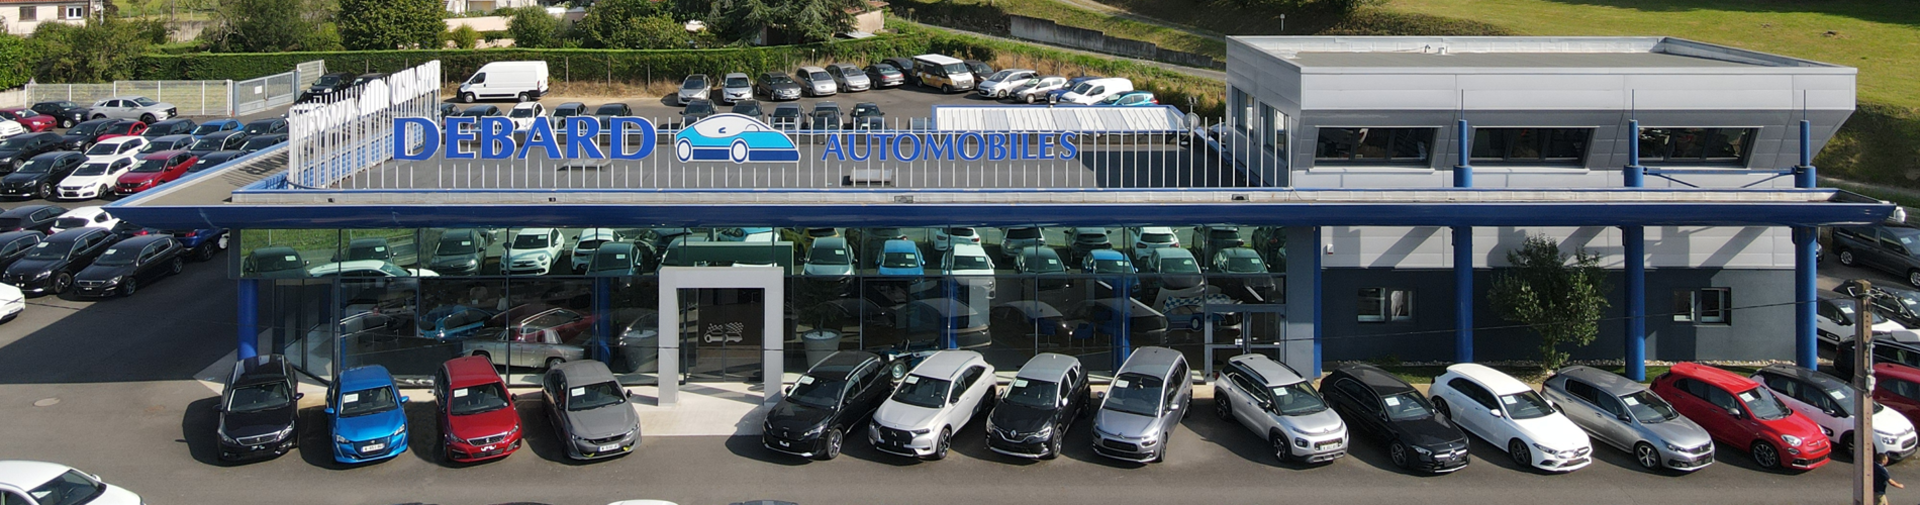 Accueil - Tout pour l'Auto Garage occasion utilitaire à vendre Vire  véhicules toutes marques en Normandie Peugeot La Graverie Renault Citroën  Audi BMW Mercedes Ford Opel